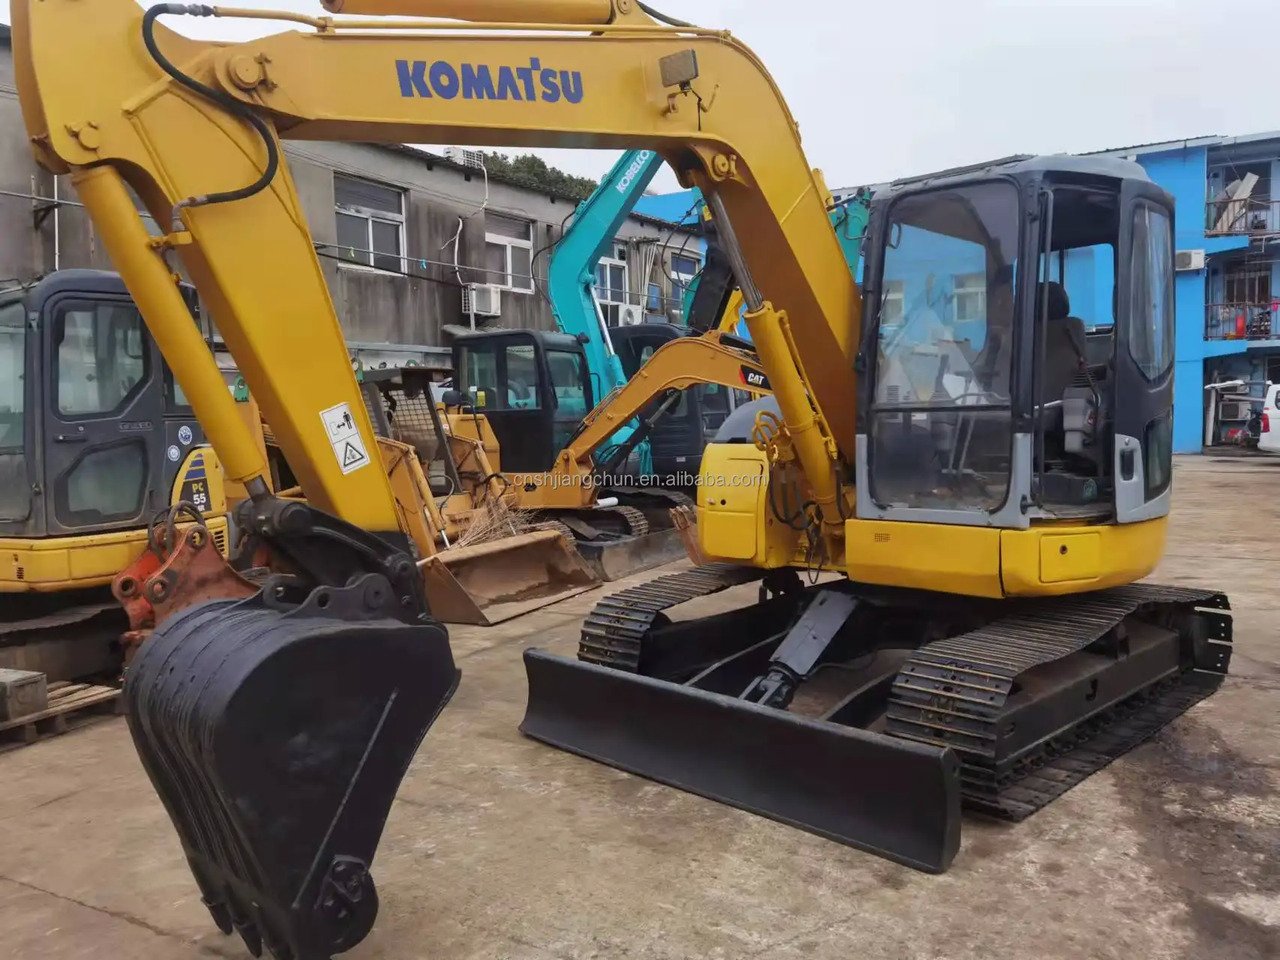 크롤러 굴삭기 competitive Used Komatsu Excavator PC78US in good condition for sale : 사진 3